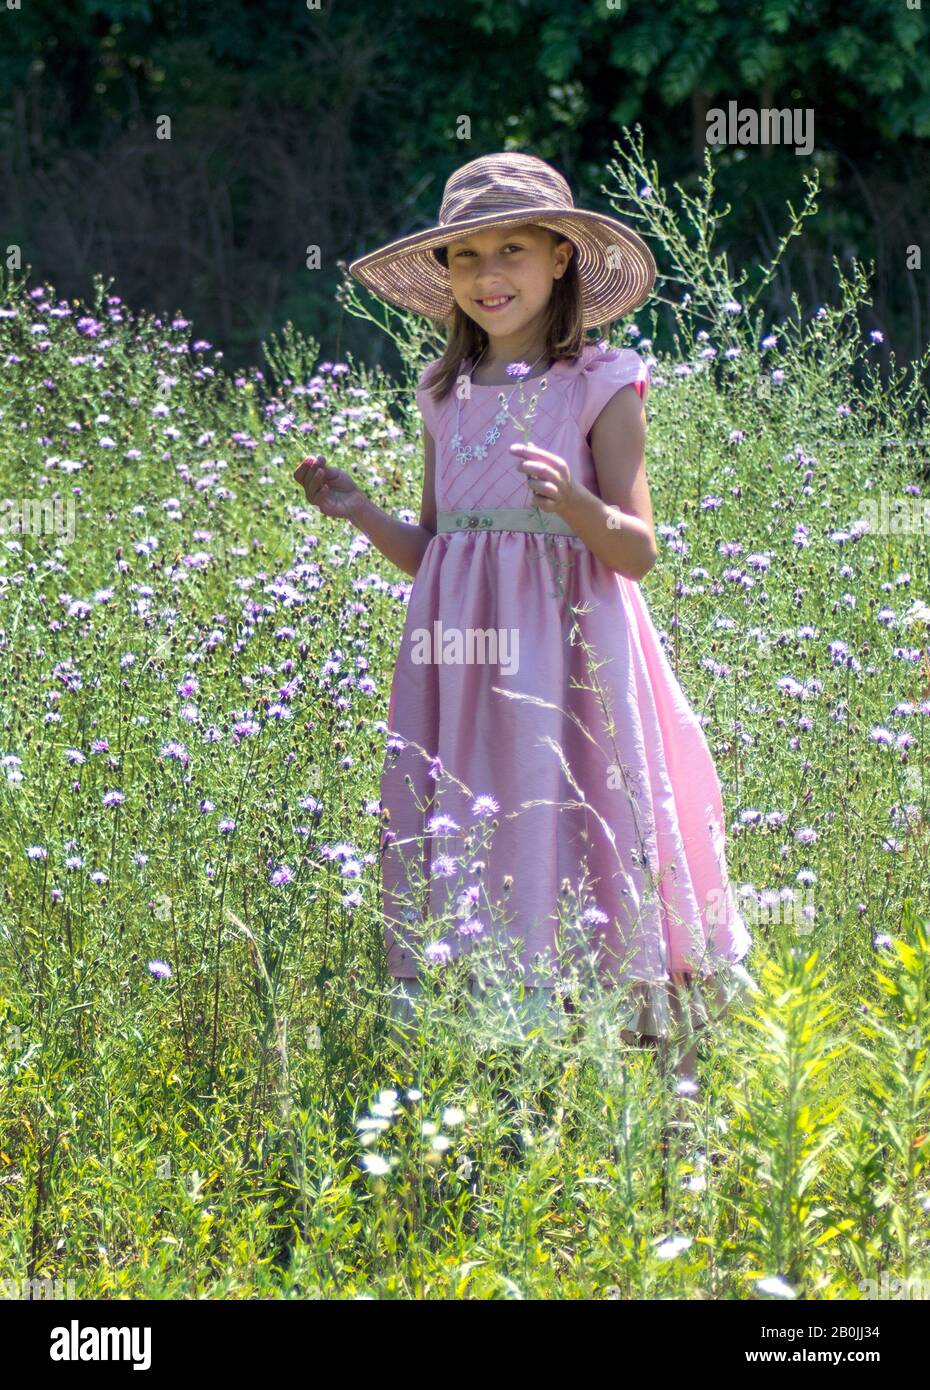 Lächelndes 10-jähriges Mädchen in einem hübschen, rosafarbenen Kleid und einem Floppyhut hält Blumen, während sie in einem Feld von Blumen steht Stockfoto